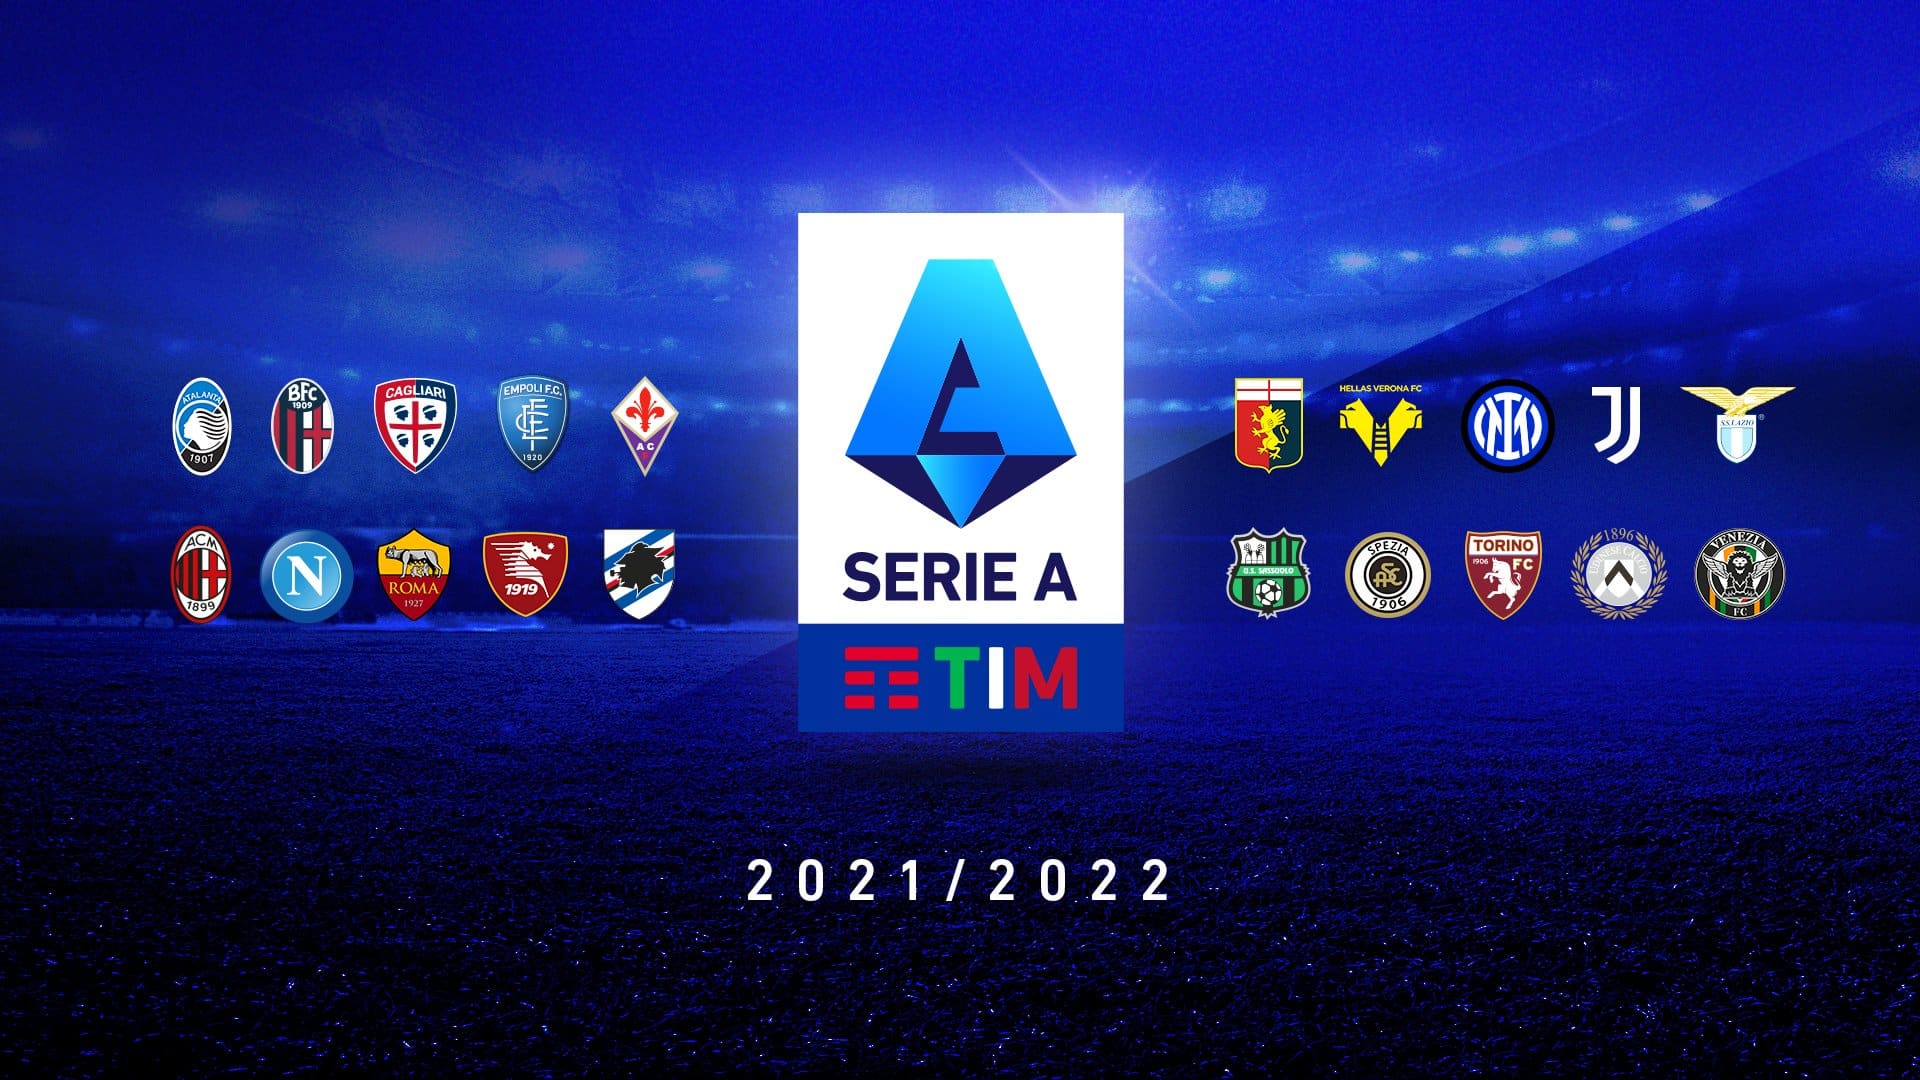 Spezia – Lazio (Pick, Prediction, Preview) Preview